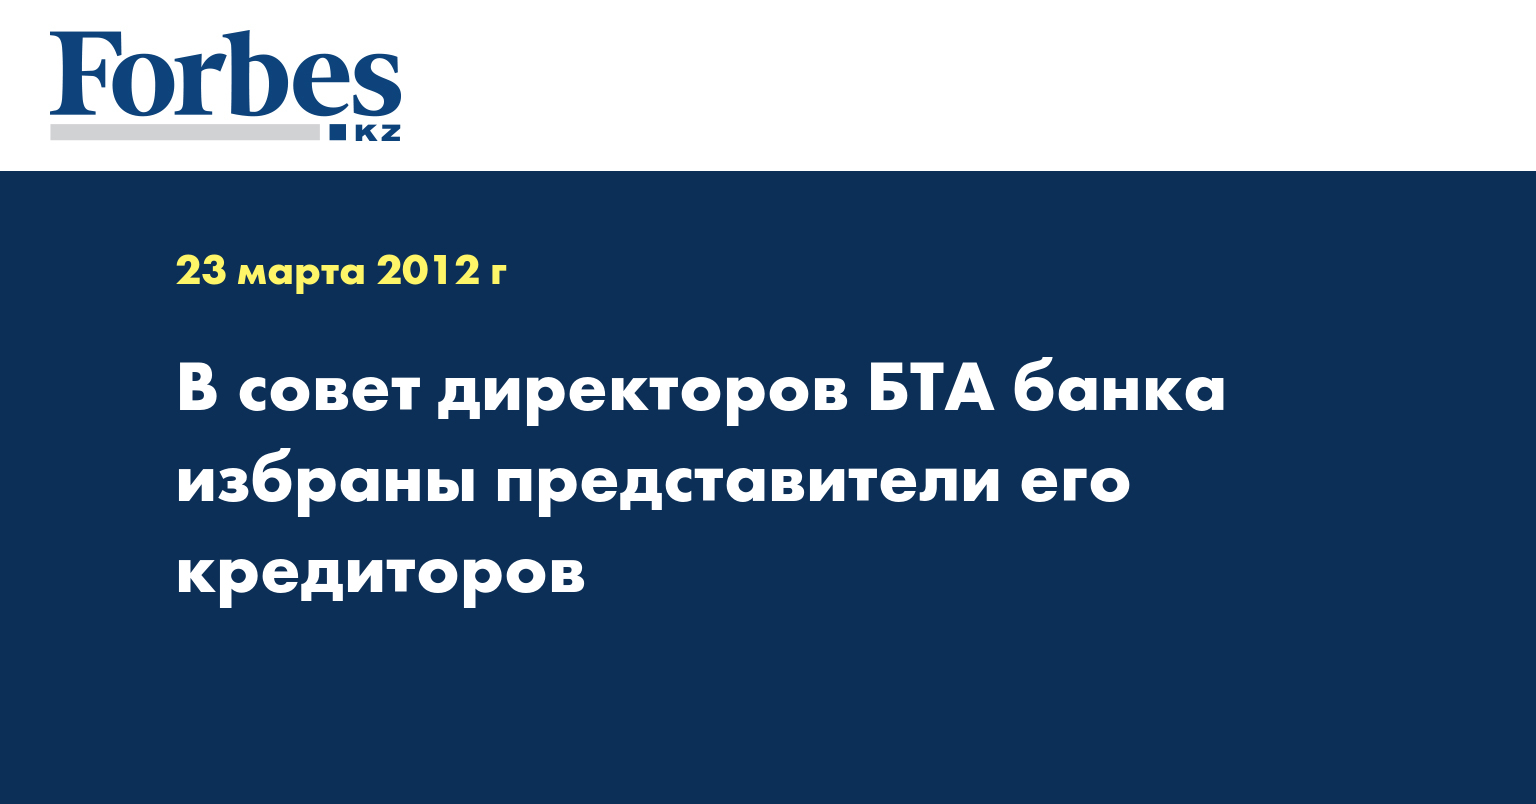 В совет директоров БТА банка избраны представители его кредиторов